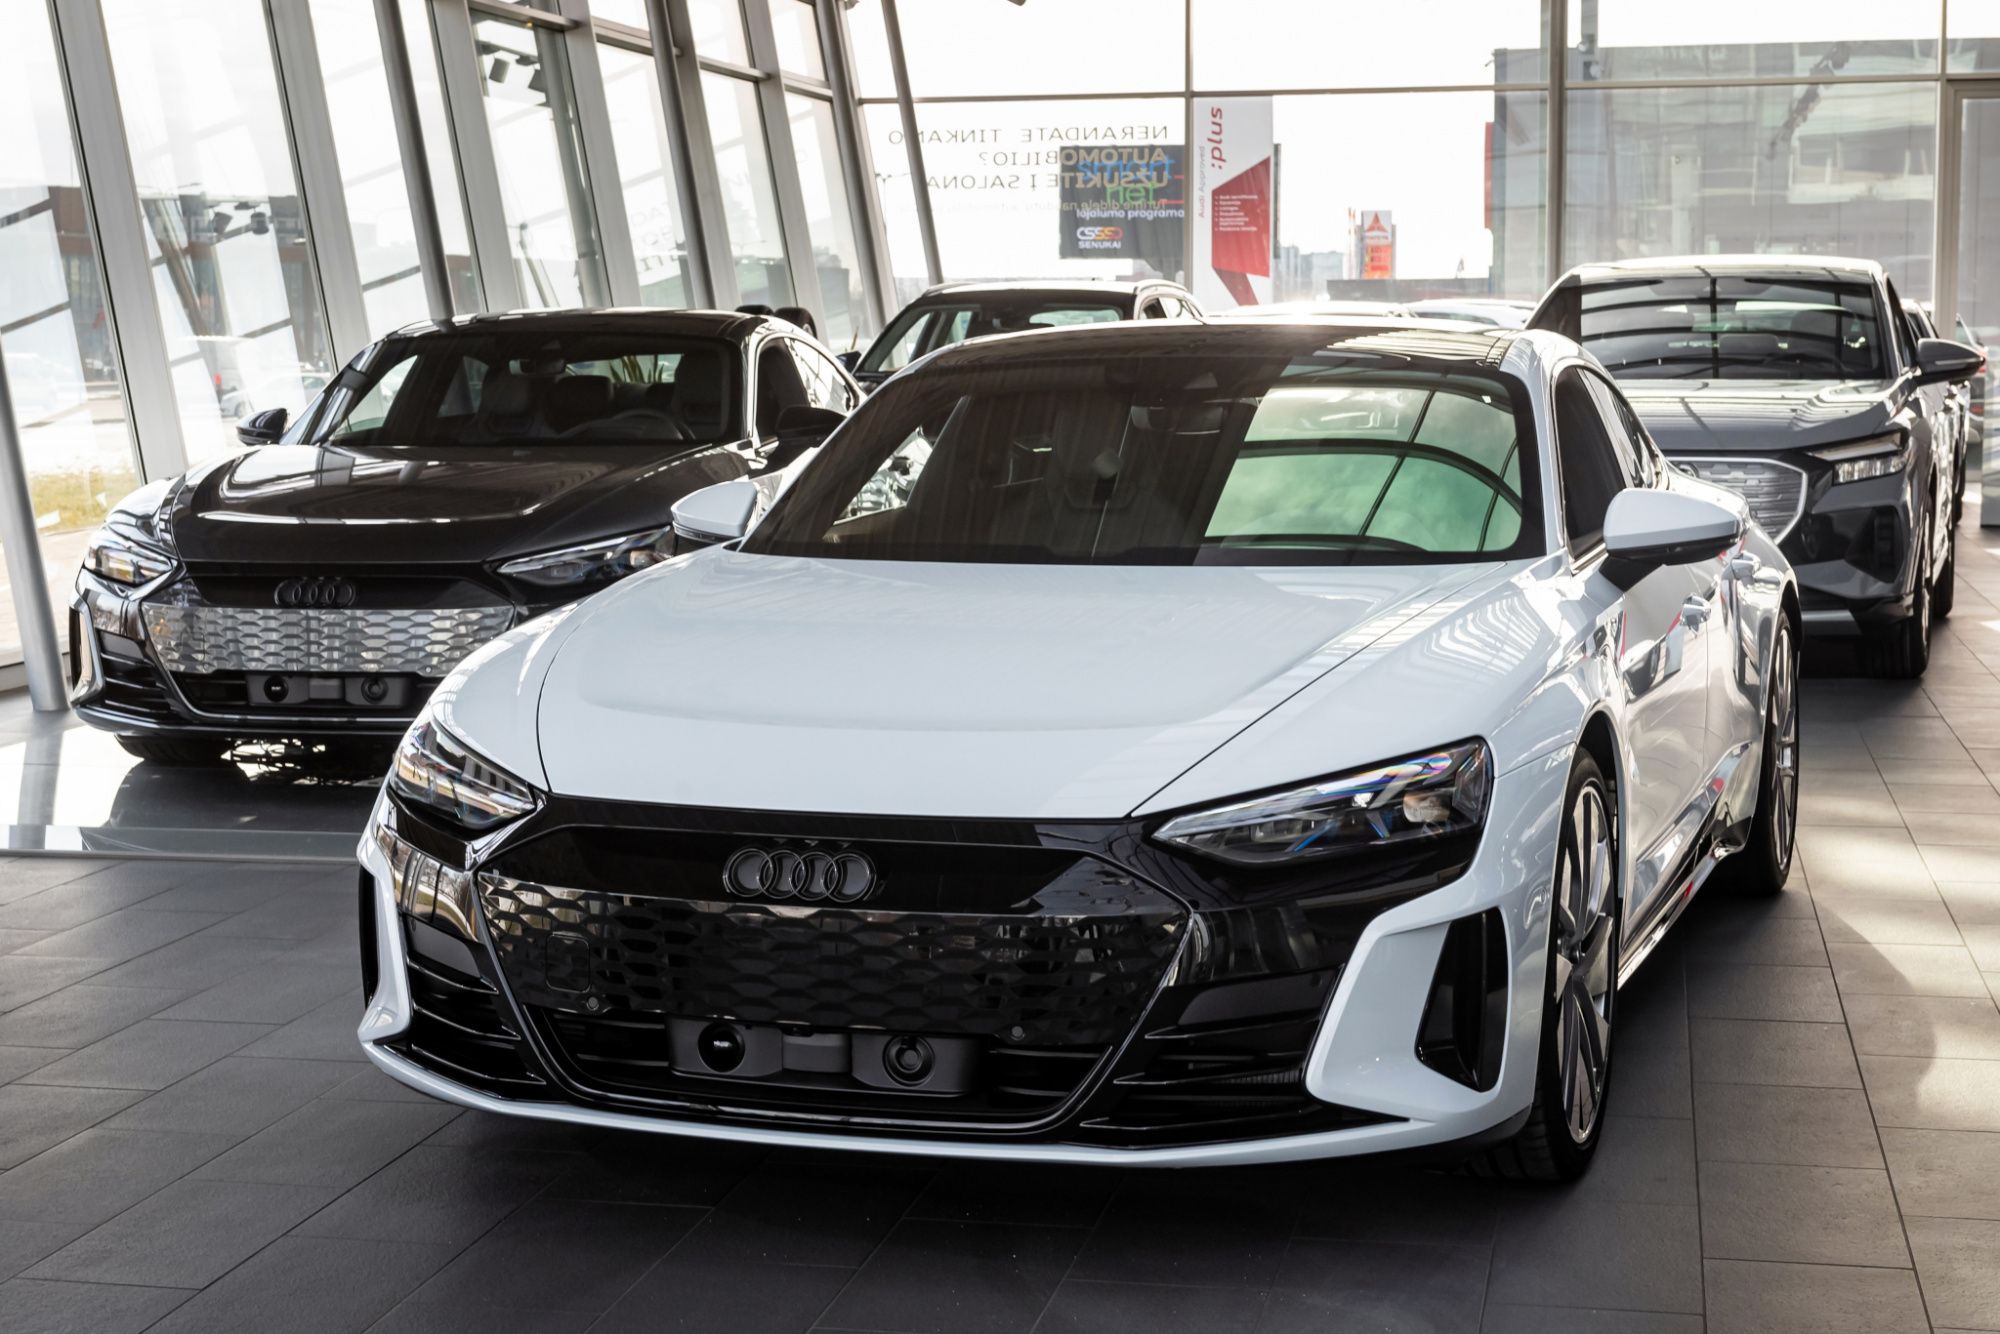 Audi tính mua khung gầm ô tô Trung Quốc để tiết kiệm tiền và thời gian phát triển - Ảnh 1.